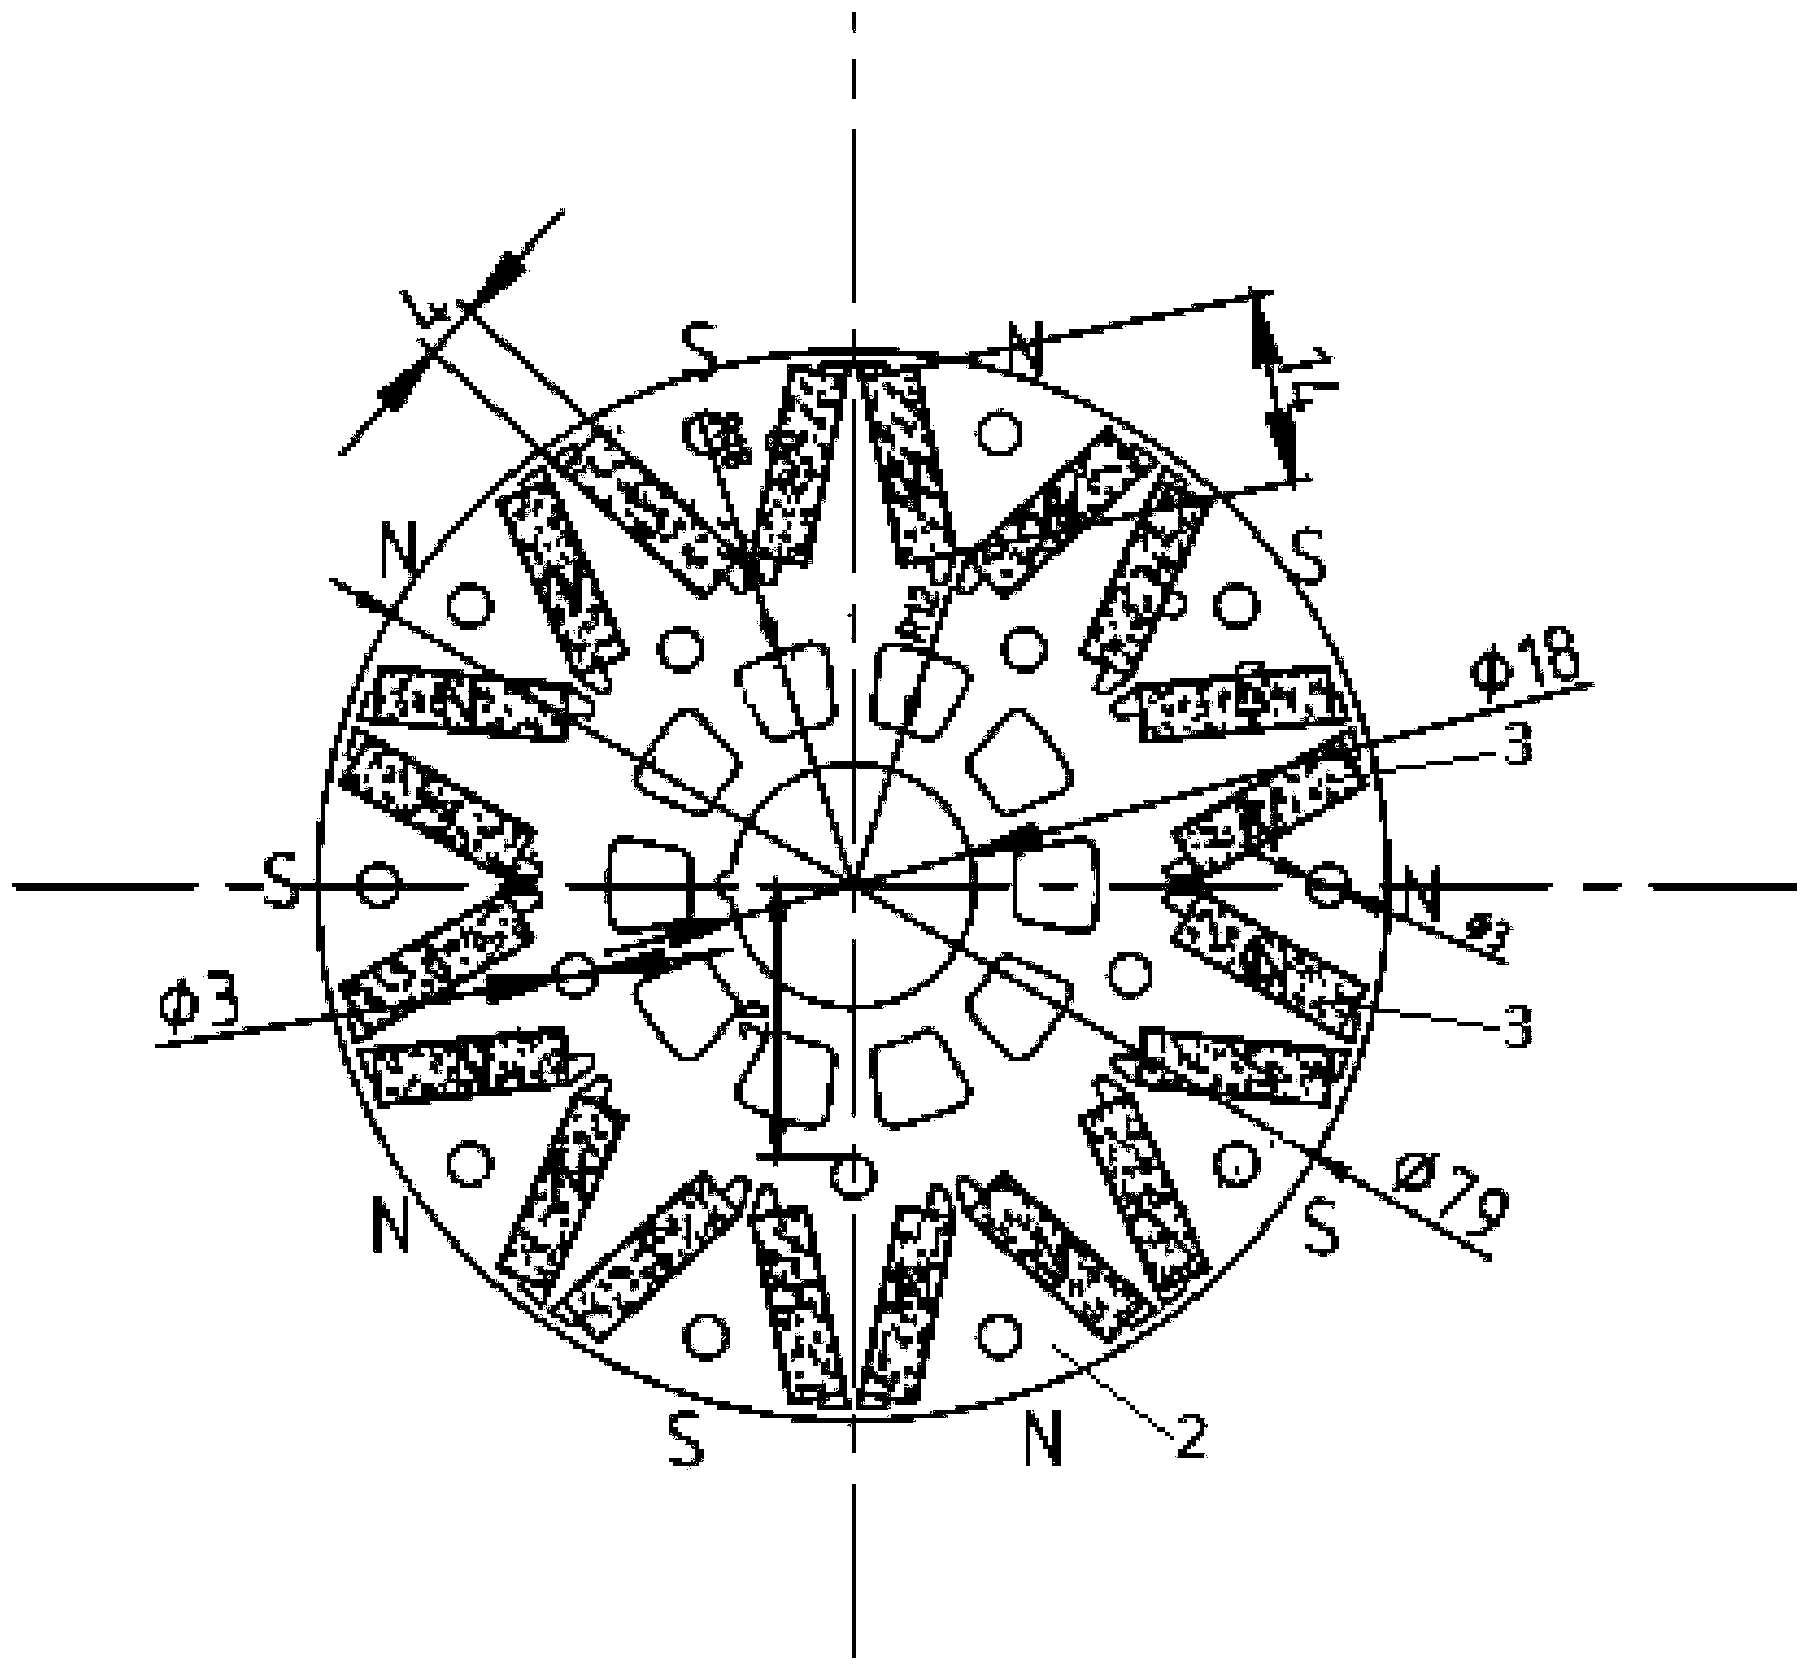 功率永磁同步电机,包括具有十二个齿槽的定子和具有十个转子极的转子